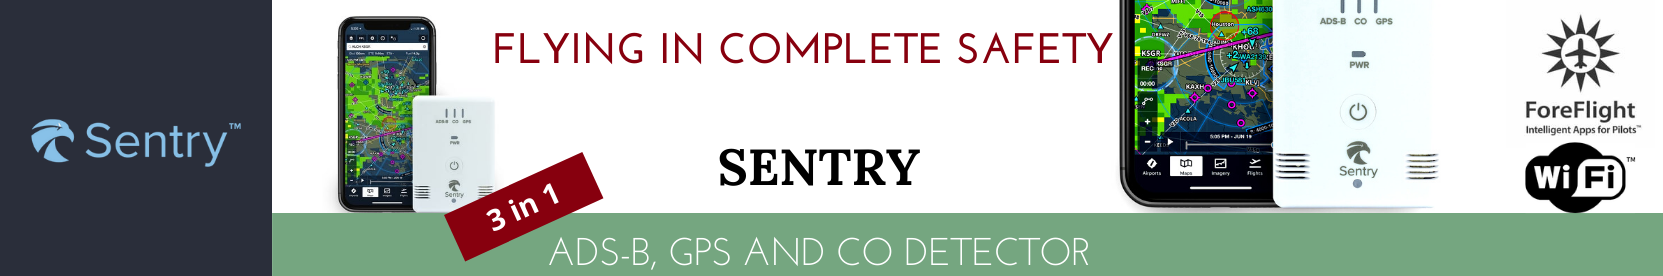 Sentry ADS-B